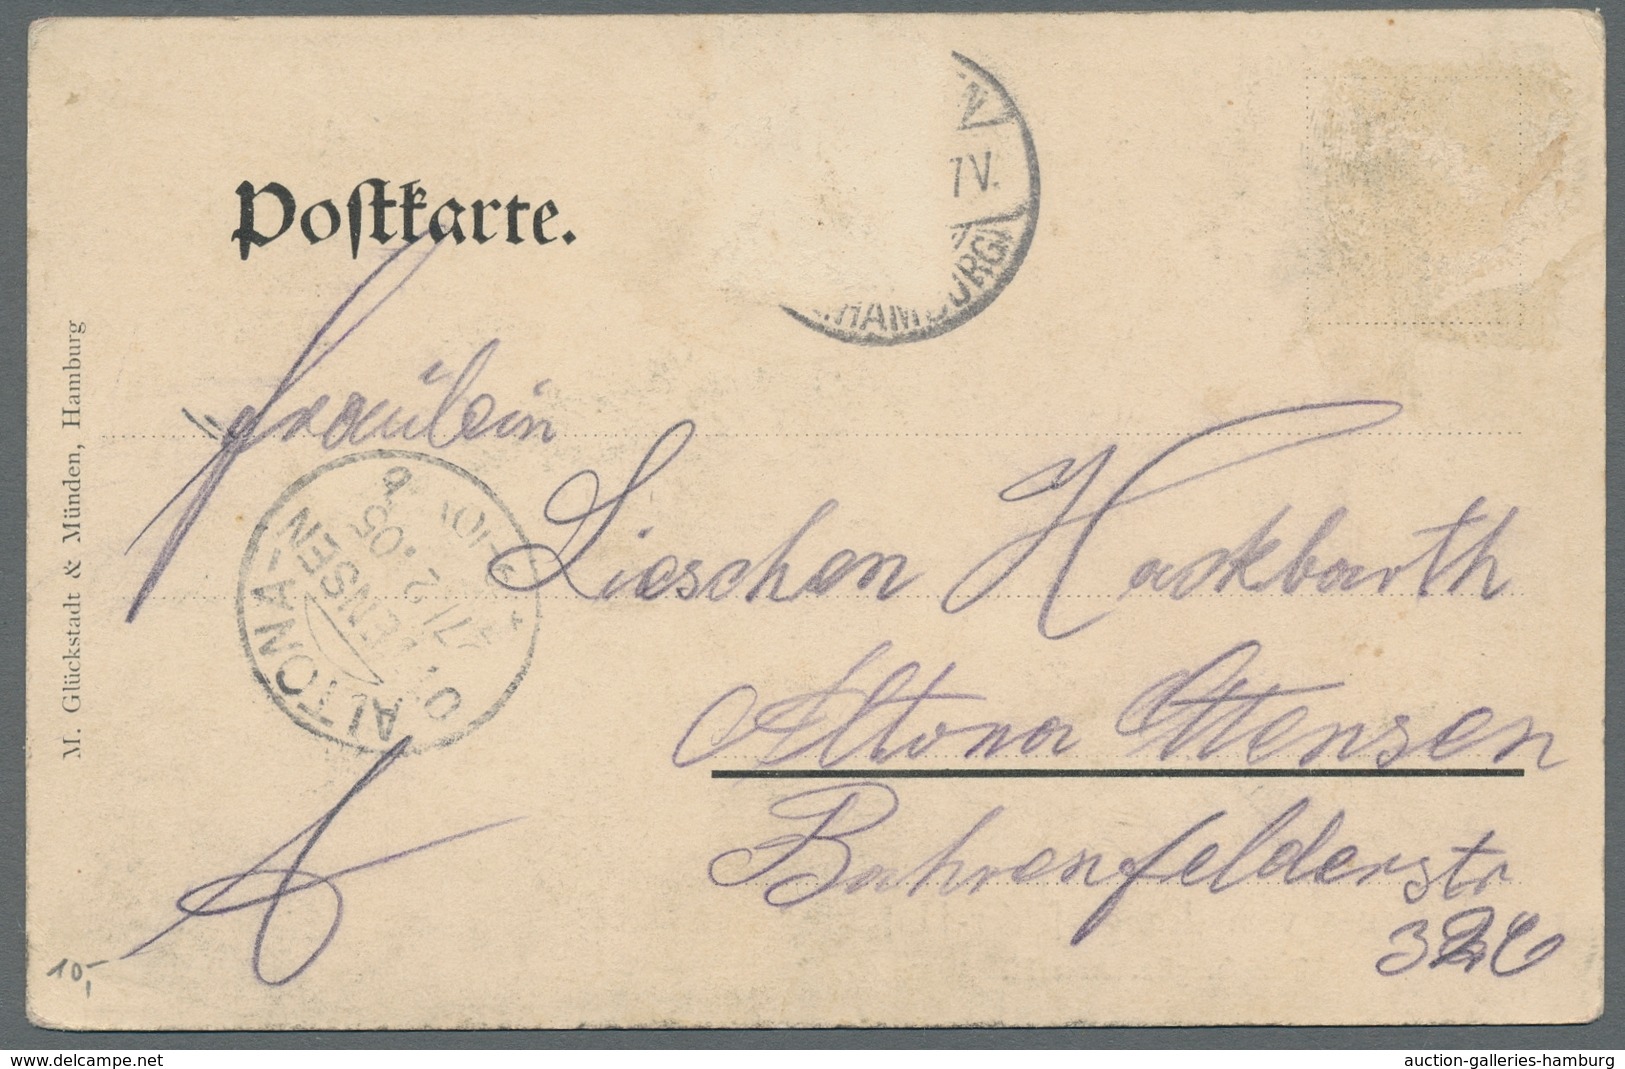 Heimat: Hamburg: LANGENFELDE und STELLINGEN; 1838-1945, Sammlung von 26 Belegen und 13 Ansichtskarte